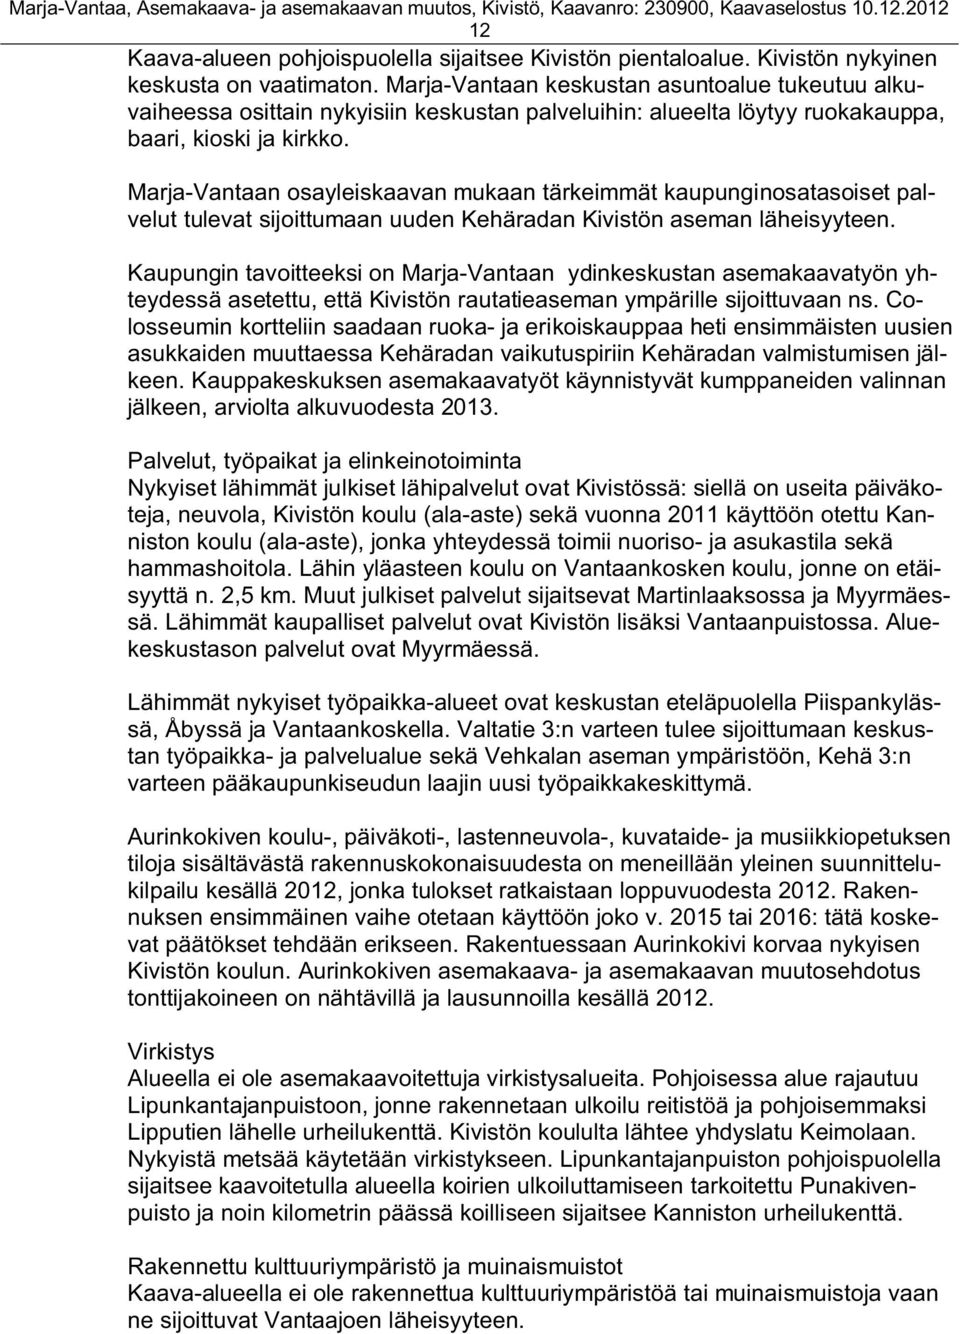 Marja-Vantaan osayleiskaavan mukaan tärkeimmät kaupunginosatasoiset palvelut tulevat sijoittumaan uuden Kehäradan Kivistön aseman läheisyyteen.